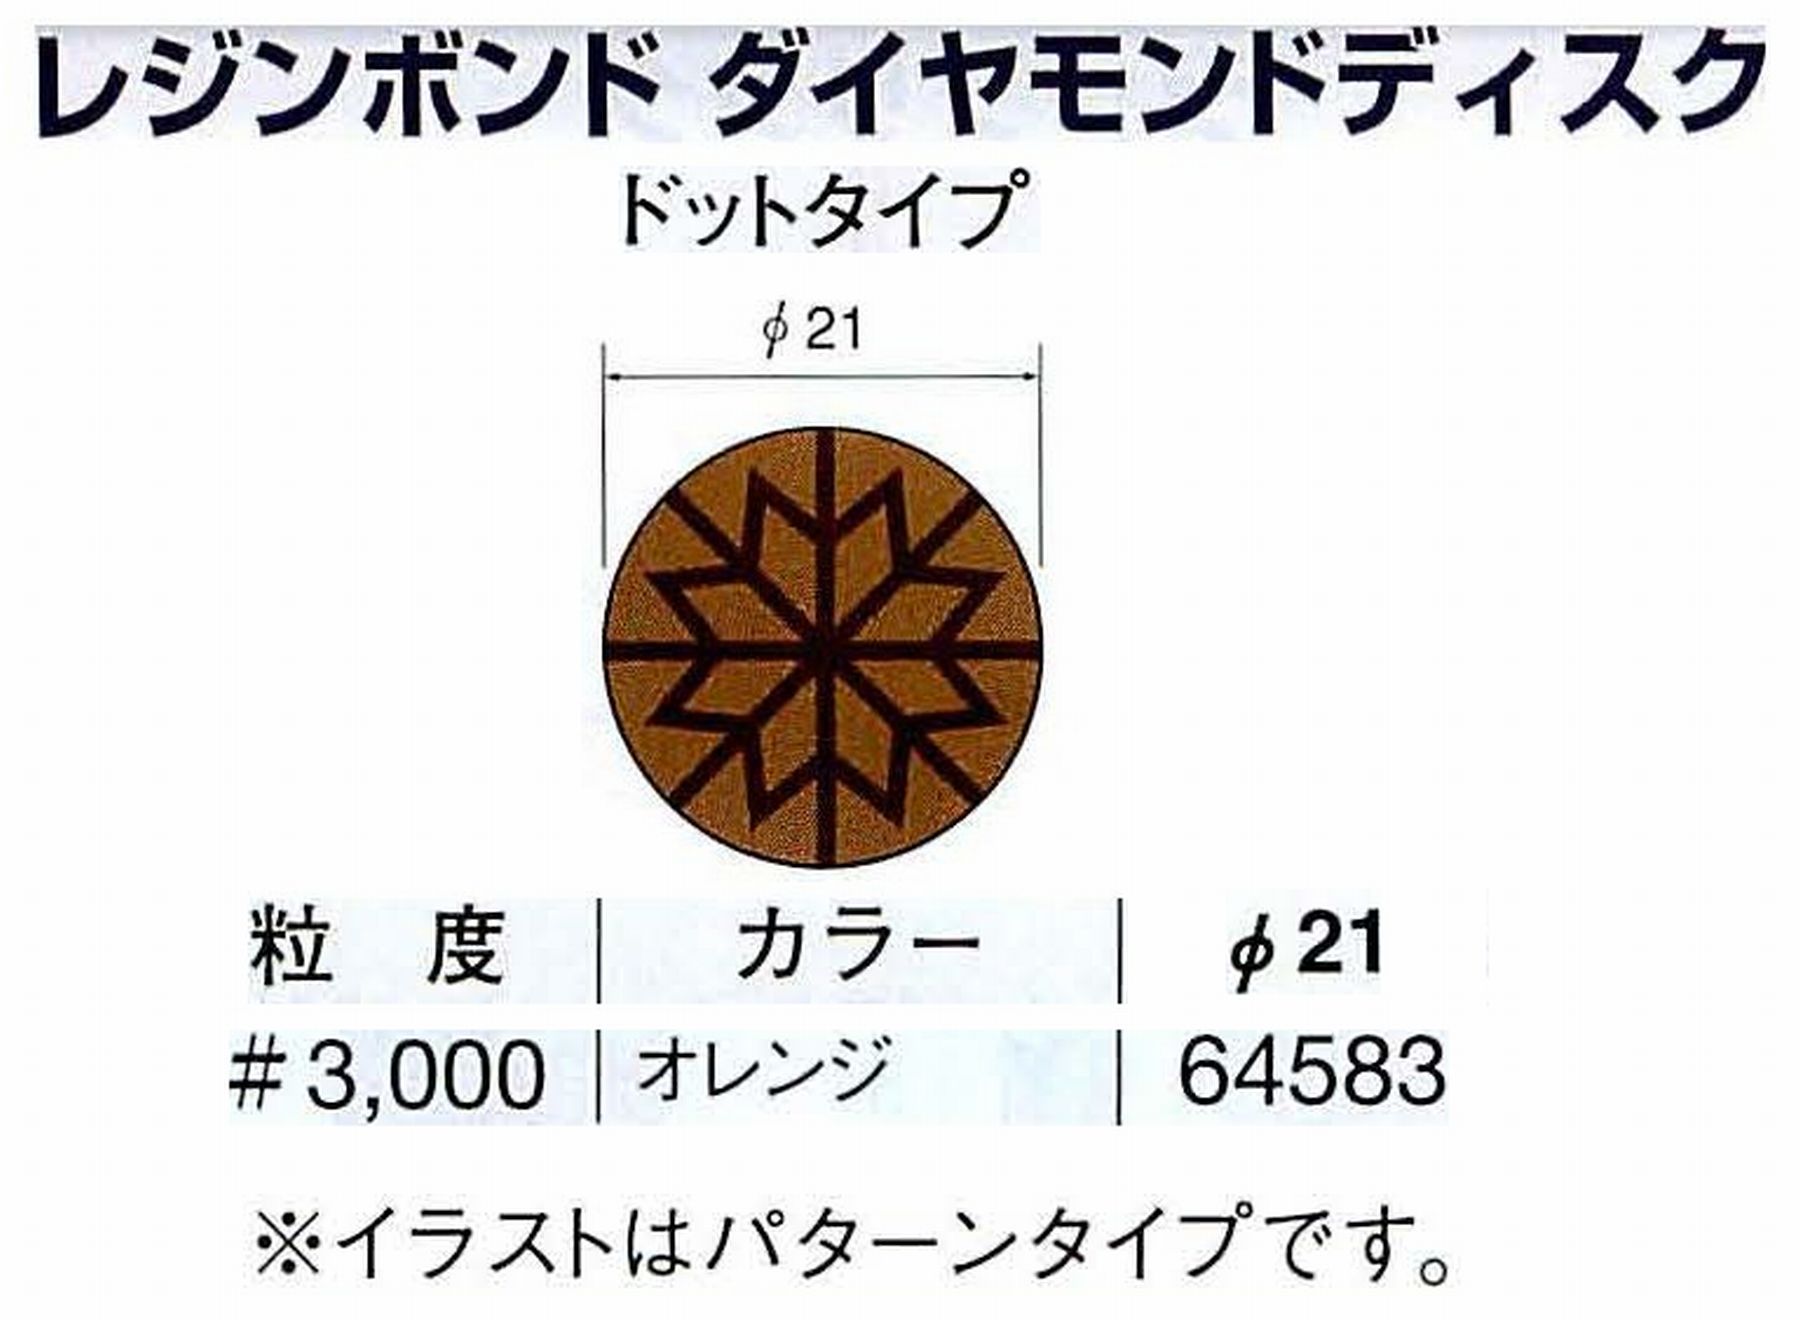 ナカニシ/NAKANISHI アングルグラインダ(電動・エアー) アングルアタッチメント専用工具 レジンボンド ダイヤモンドディスク(ドットタイプ) 64583